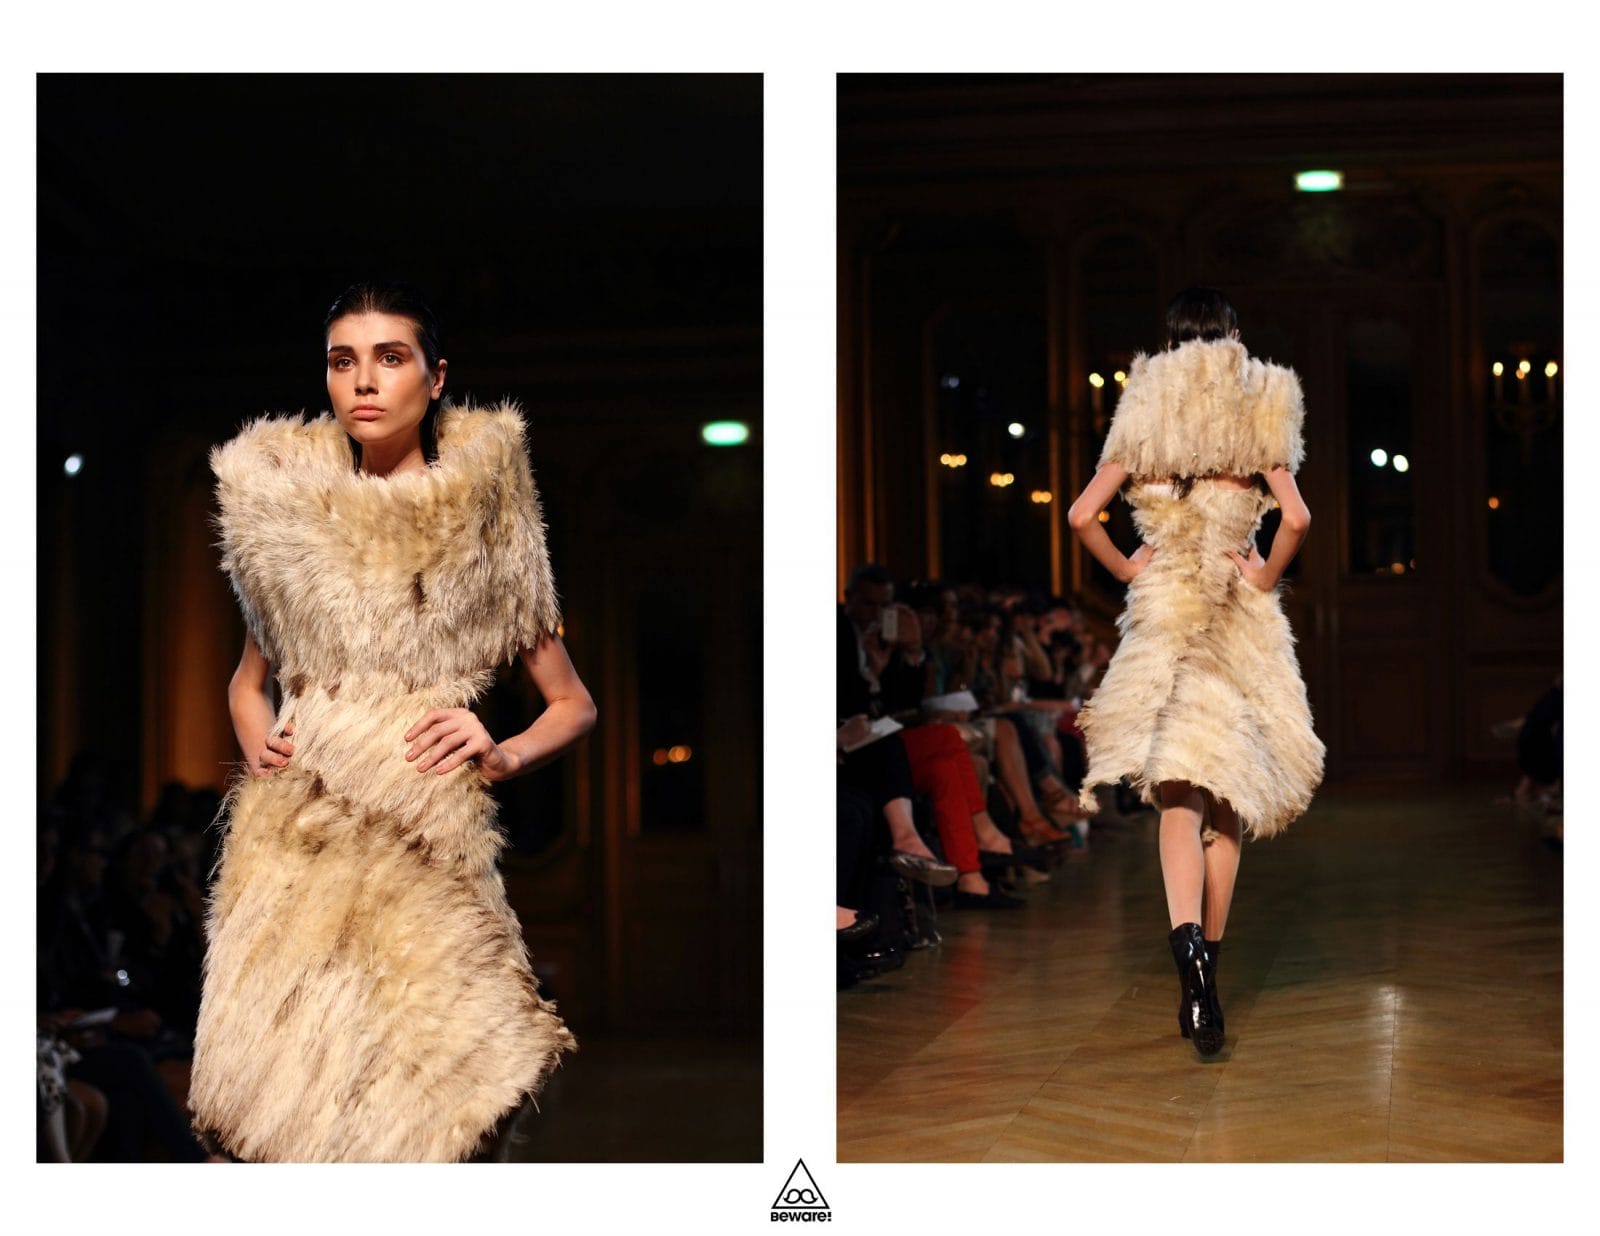 Défilé Haute Couture 2012/13 : Serkan Cura 1